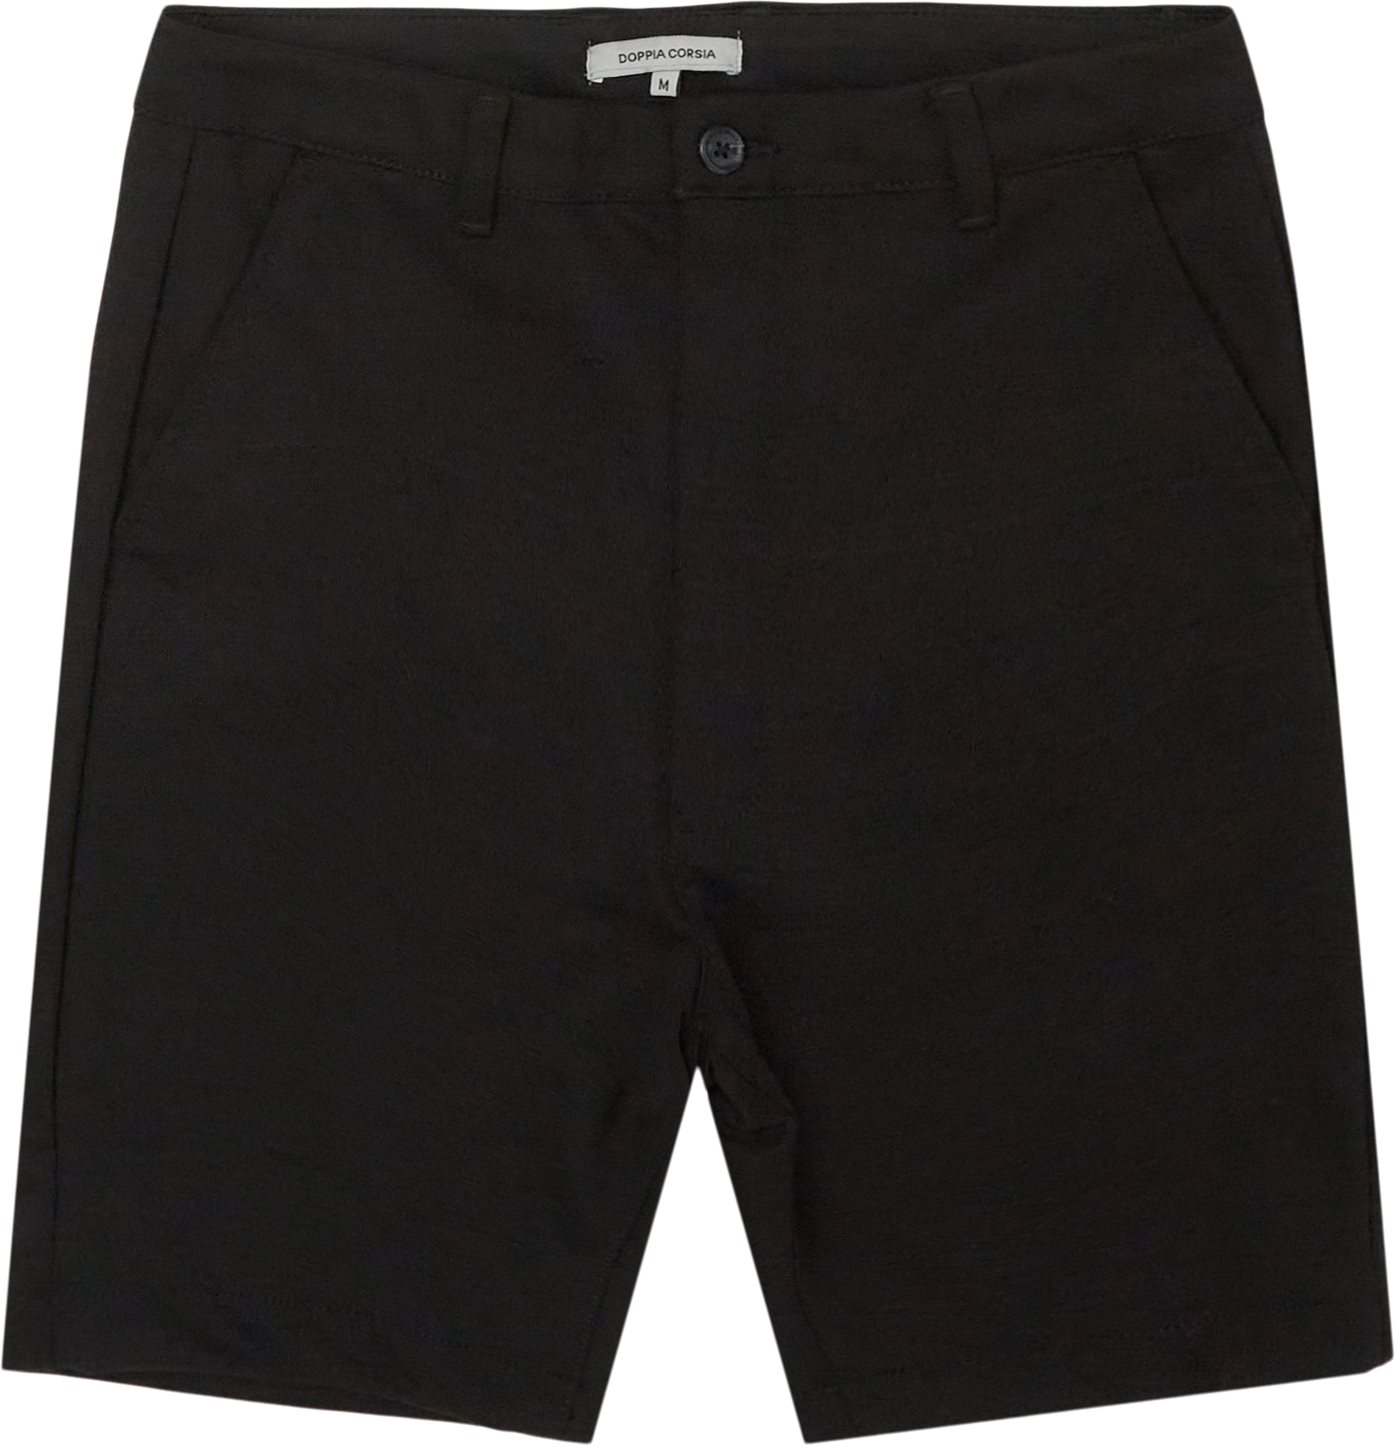 Colette Shorts - Shorts - Regular fit - Black